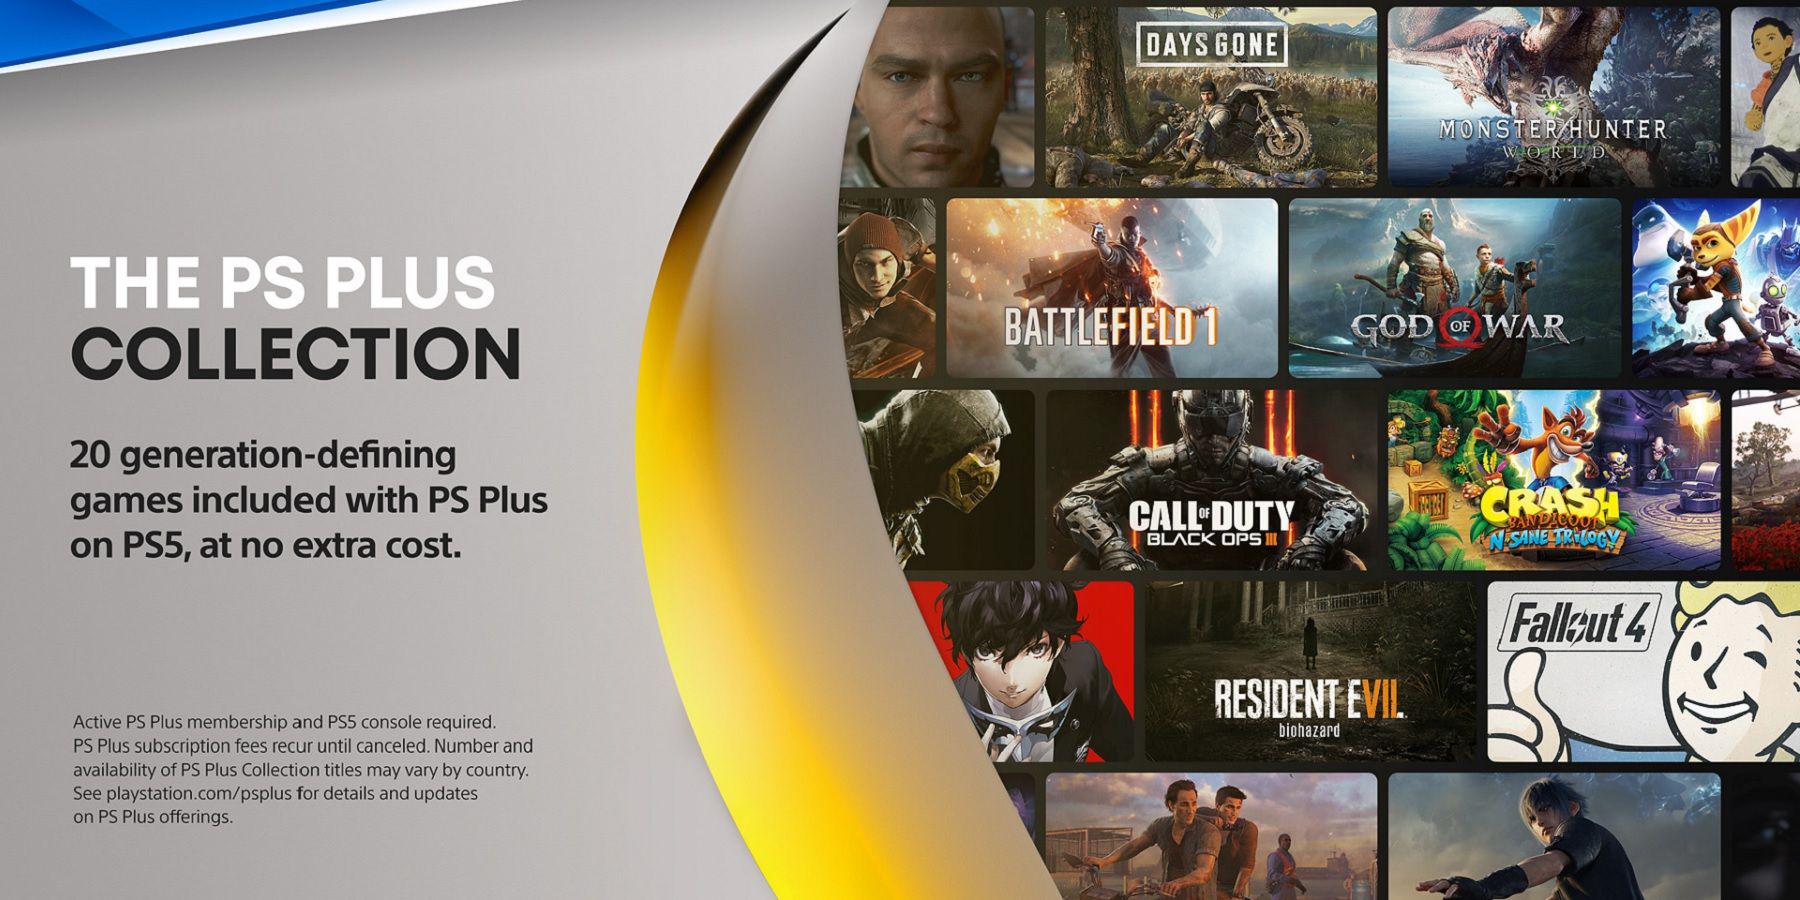 Os assinantes do PlayStation Plus devem definitivamente reivindicar os jogos da coleção PS Plus enquanto ainda podem